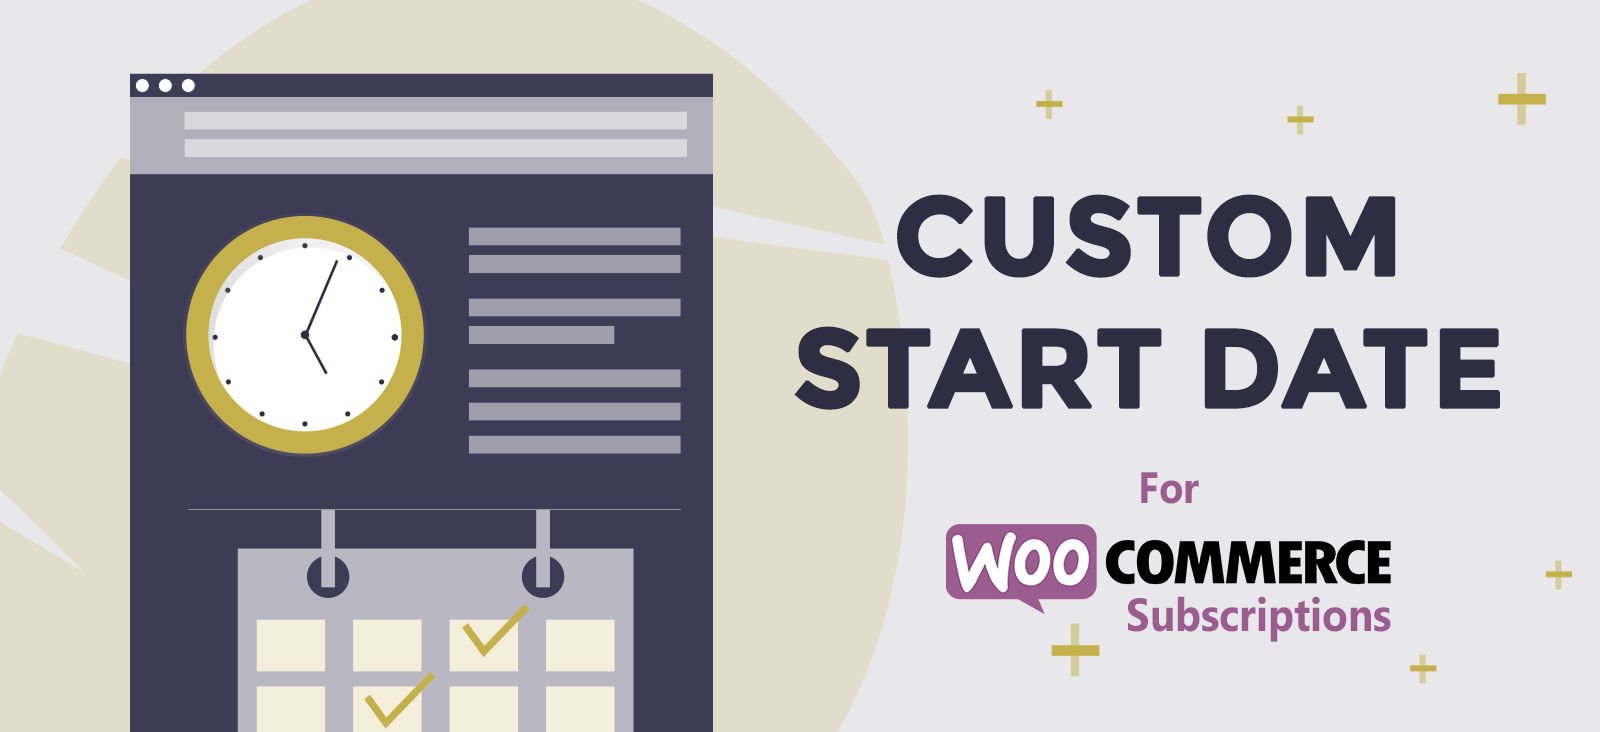 Custom Start Date for WooCommerce Subscriptions.jpg